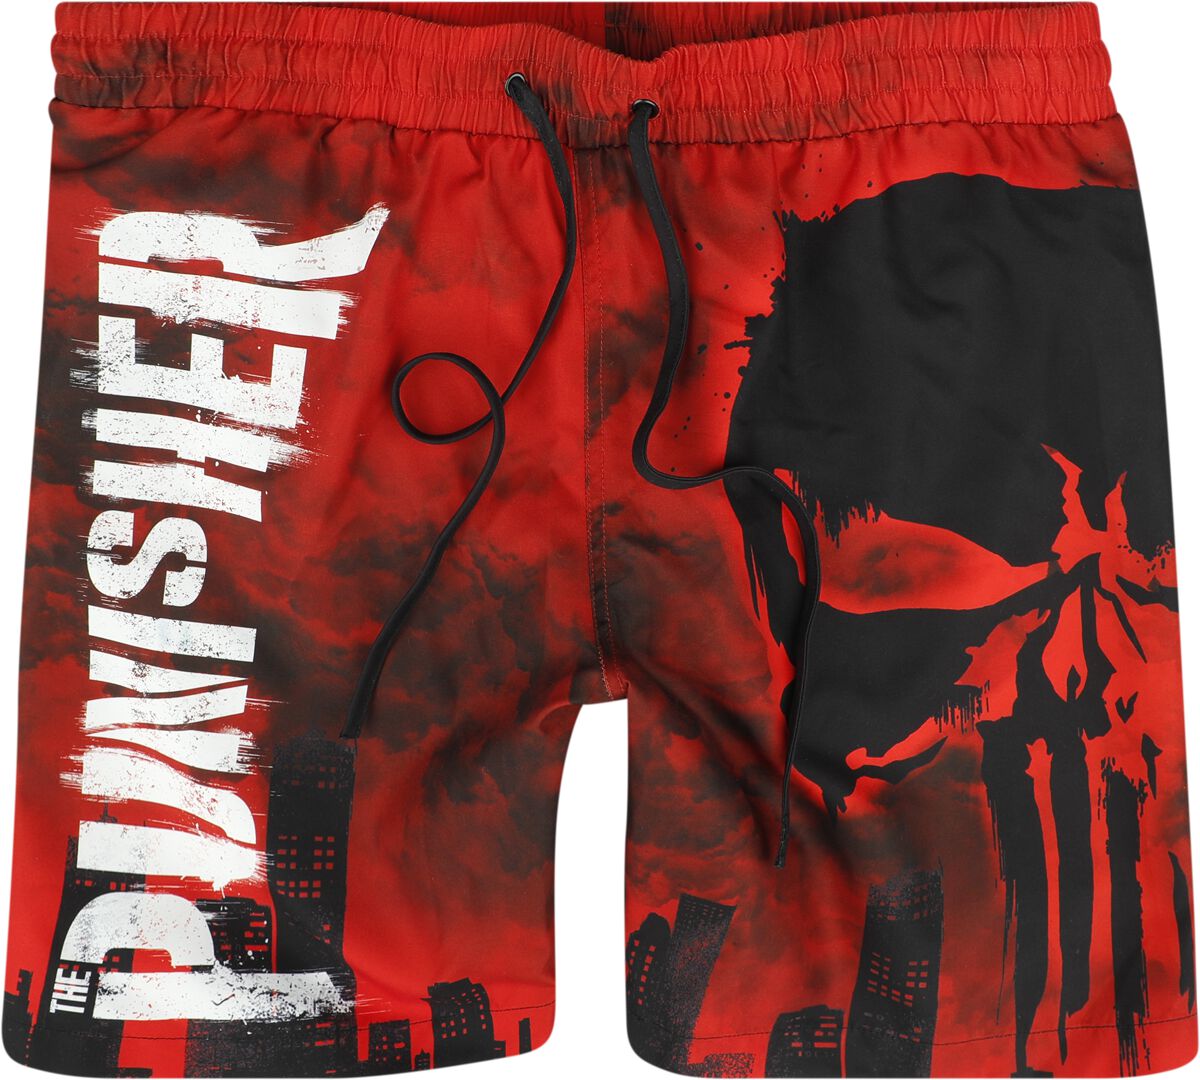 The Punisher - Marvel Badeshort - Skull - Red Desaster - S bis XXL - für Männer - Größe XL - multicolor  - EMP exklusives Merchandise!